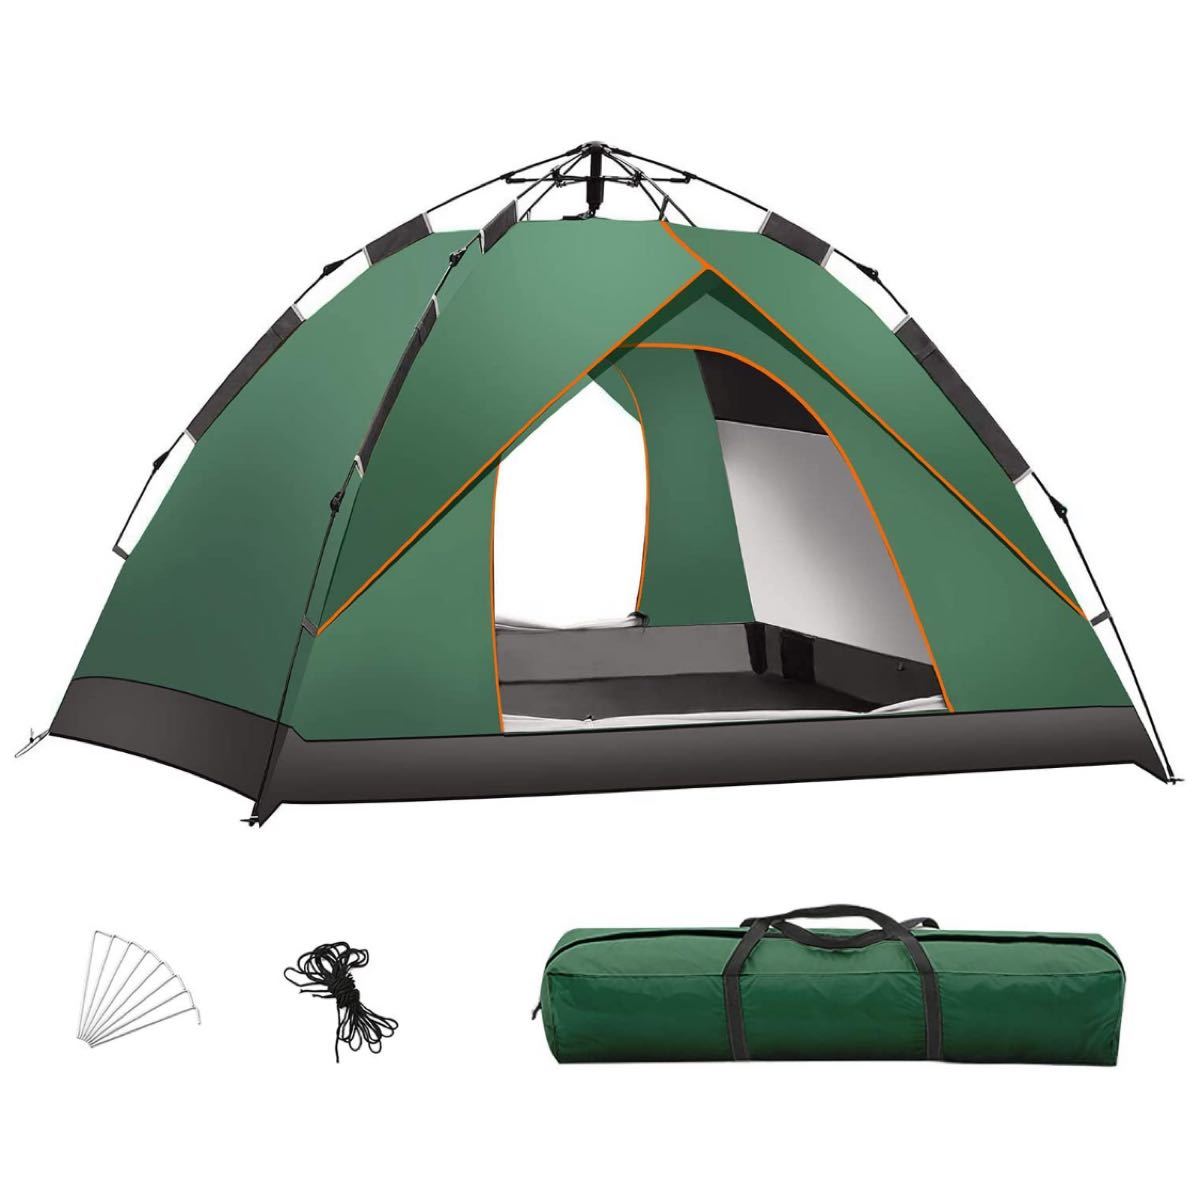  テント ワンタッチテント 2-4人用 防風防雨 UVカット加工 設営簡単 キャンプテント